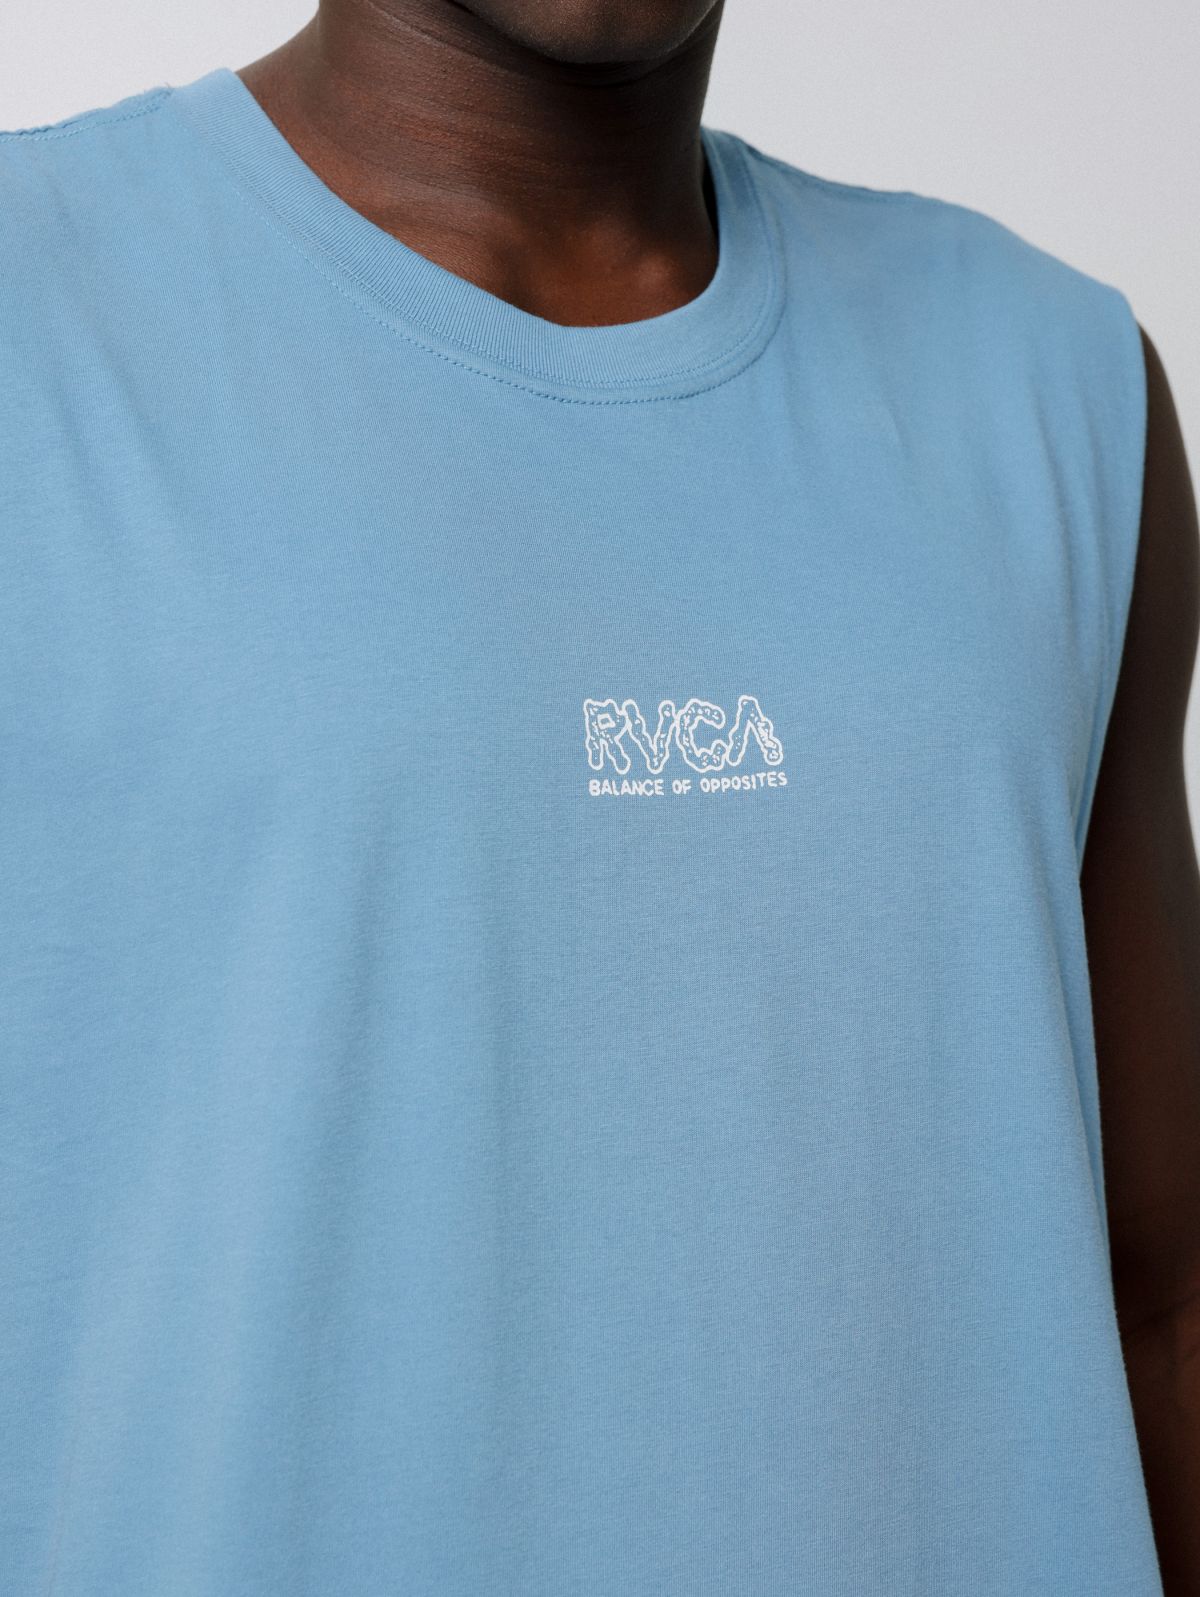  גופייה עם הדפס לוגו של RVCA